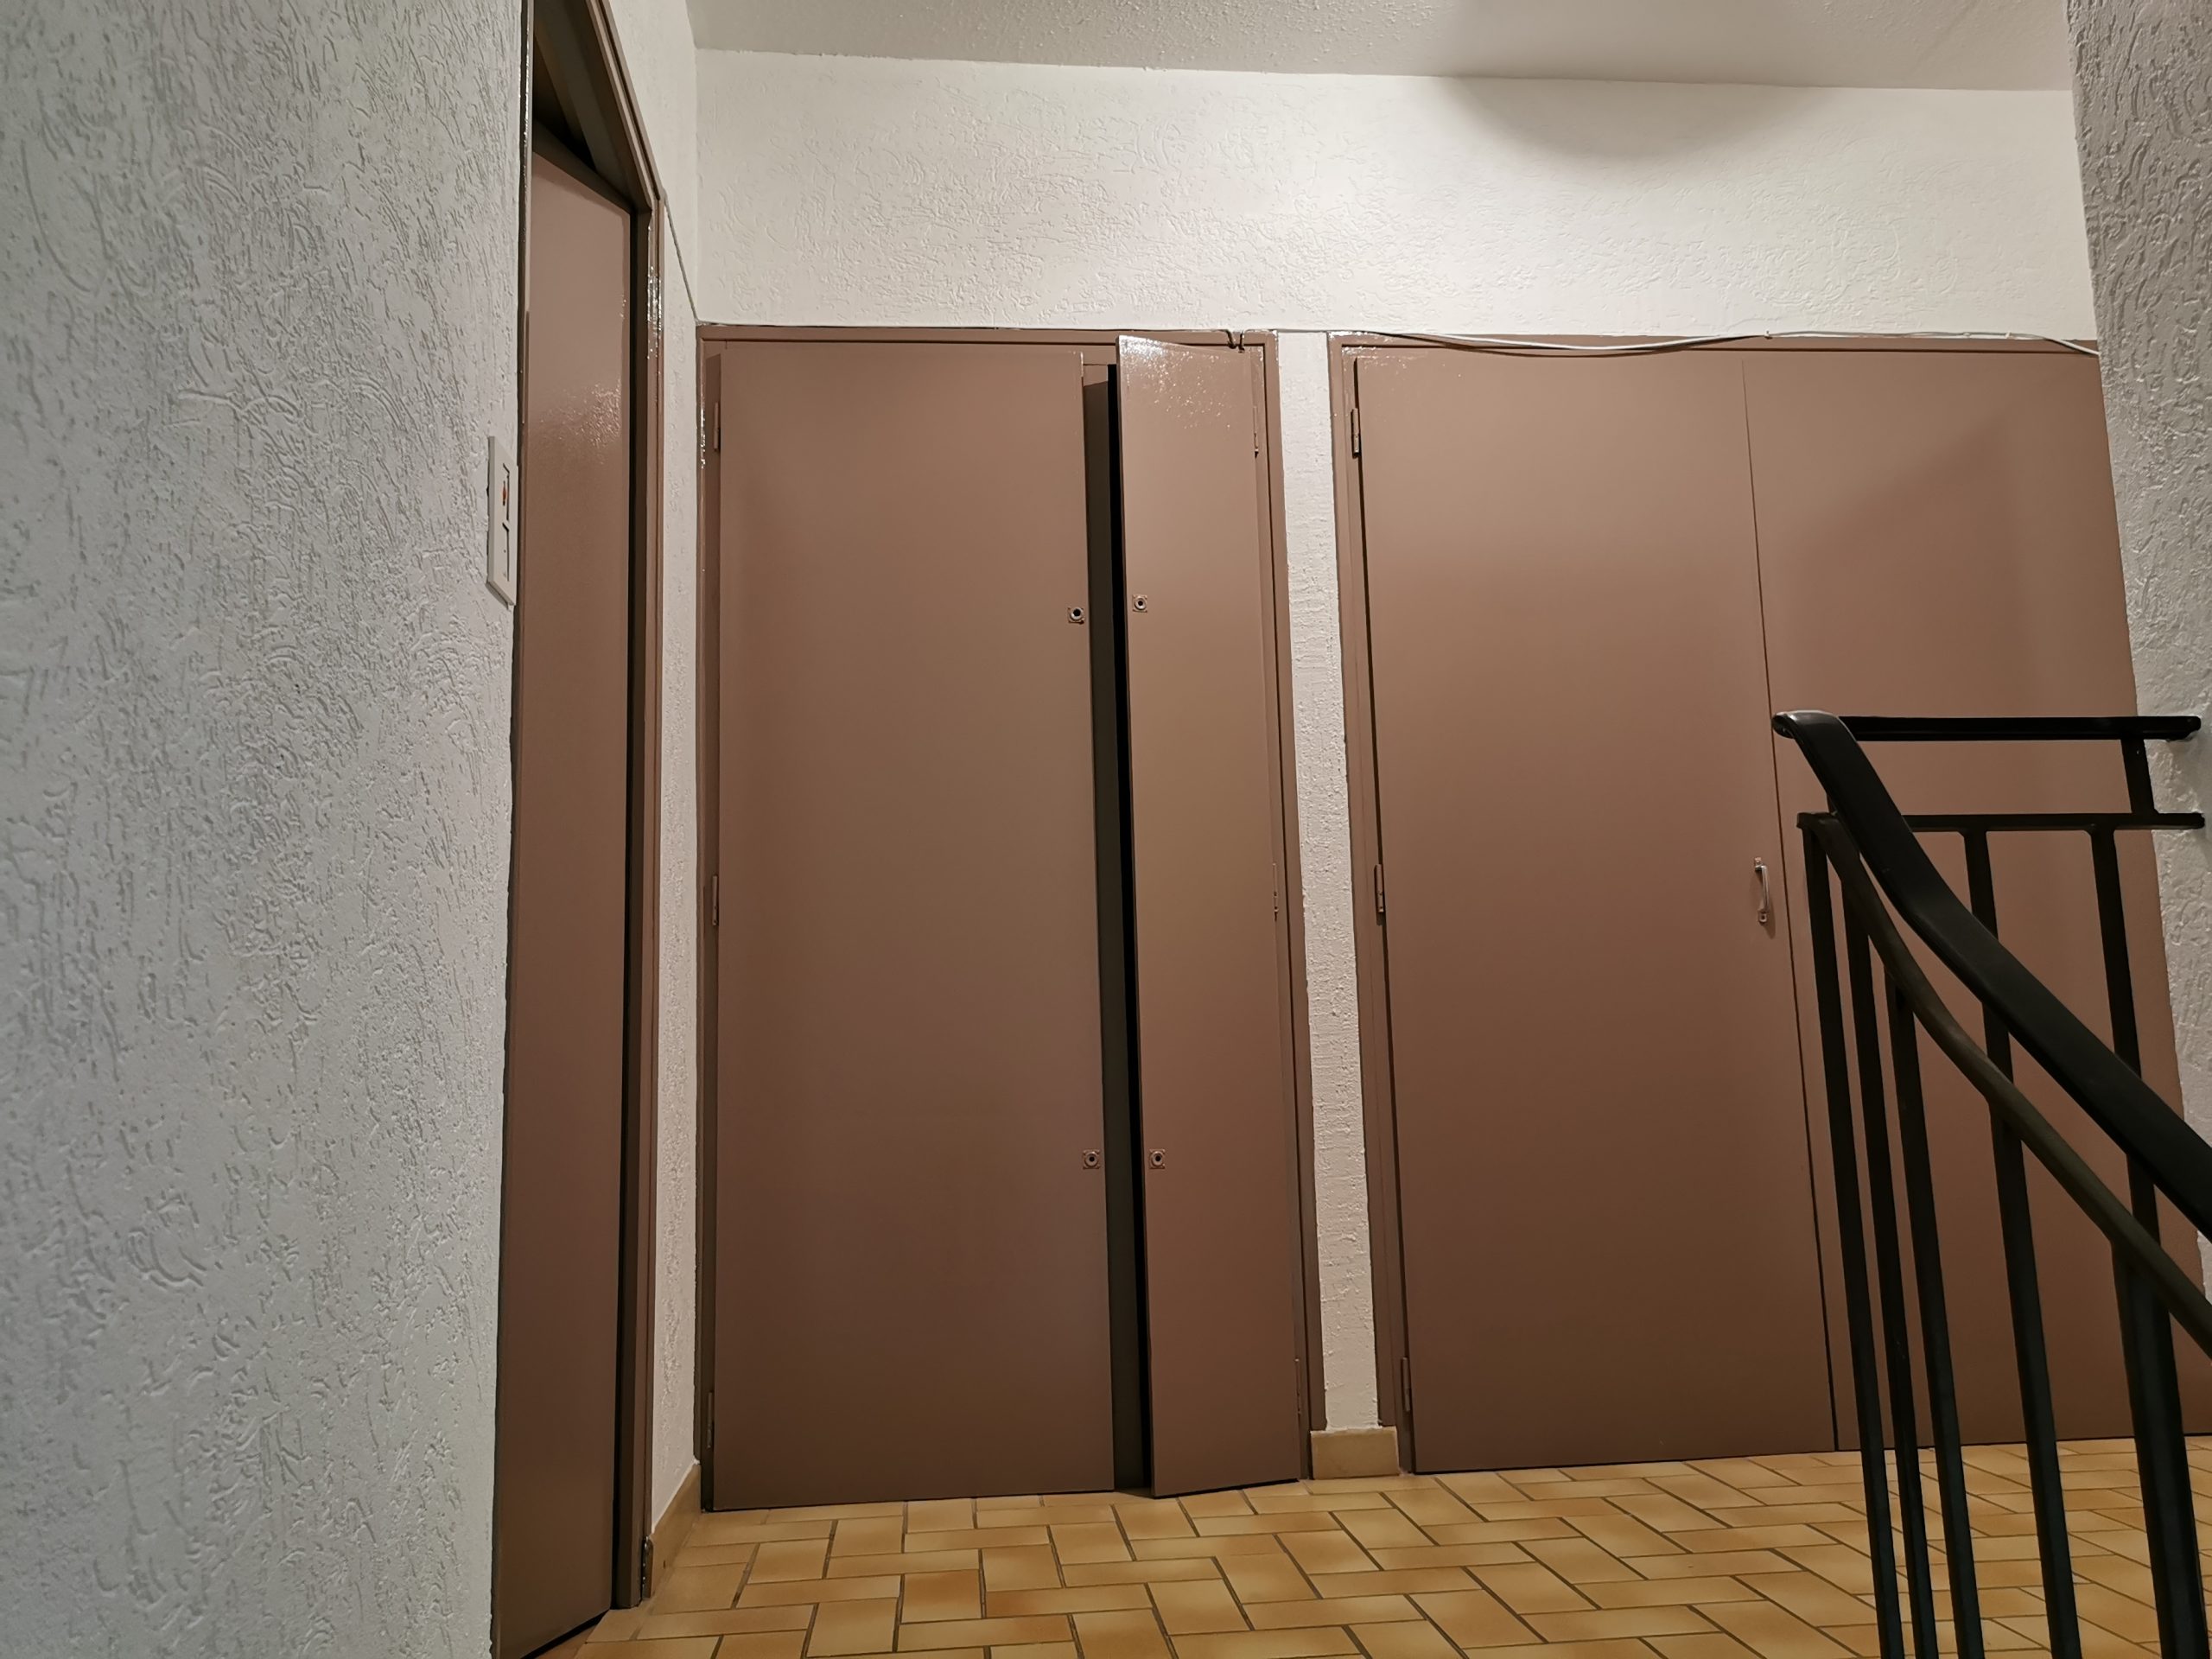 Réfection murs, plafonds et portes d'une montée d'escaliers